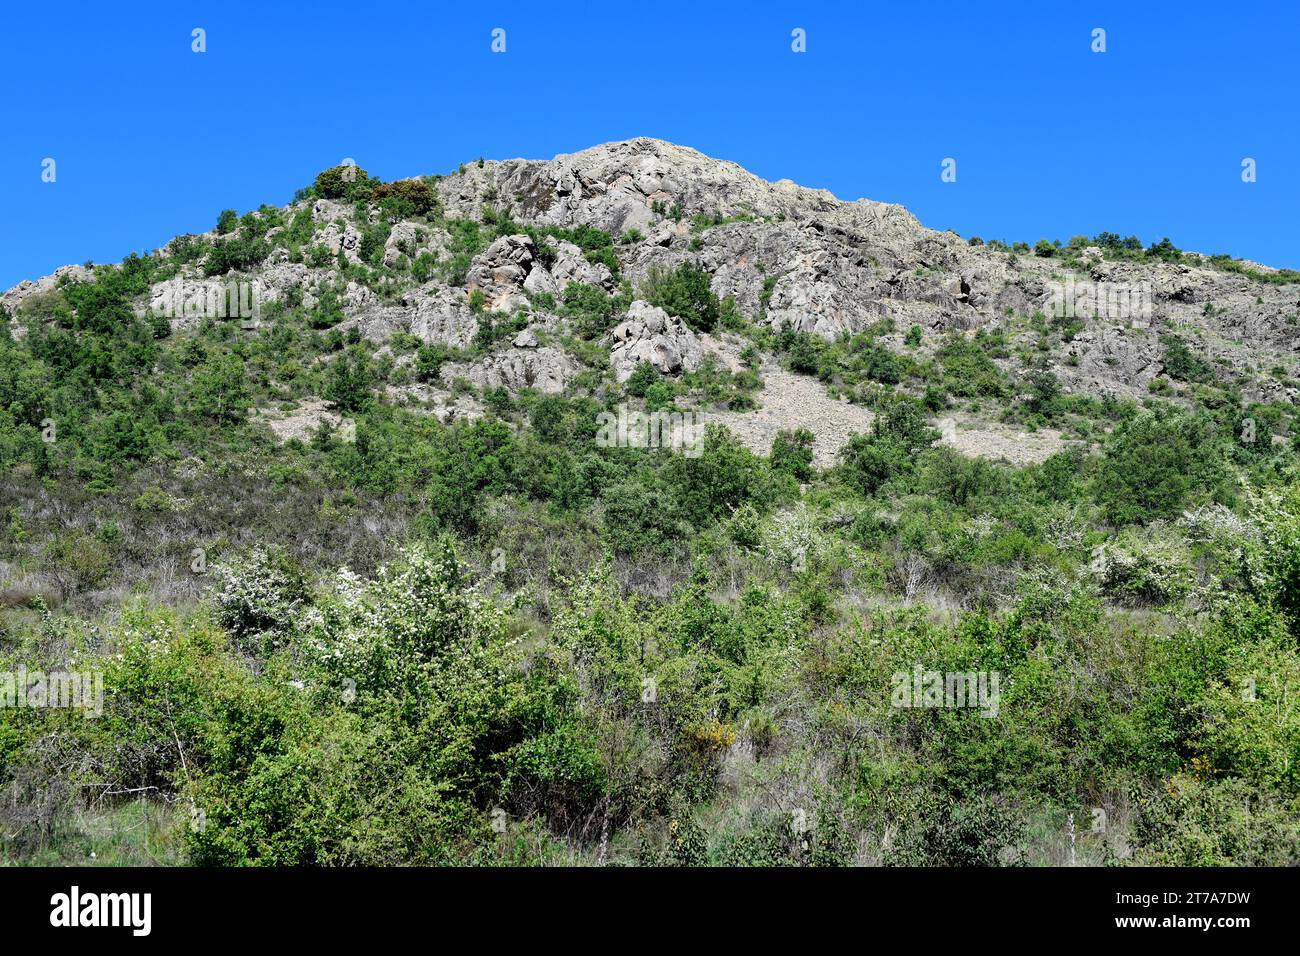 Vulkanischer Aufschluss von Andesita aus Perm. Cerros volcánicos de la Miñosa, Guadalajara, Castilla-La Mancha, Spanien. Stockfoto